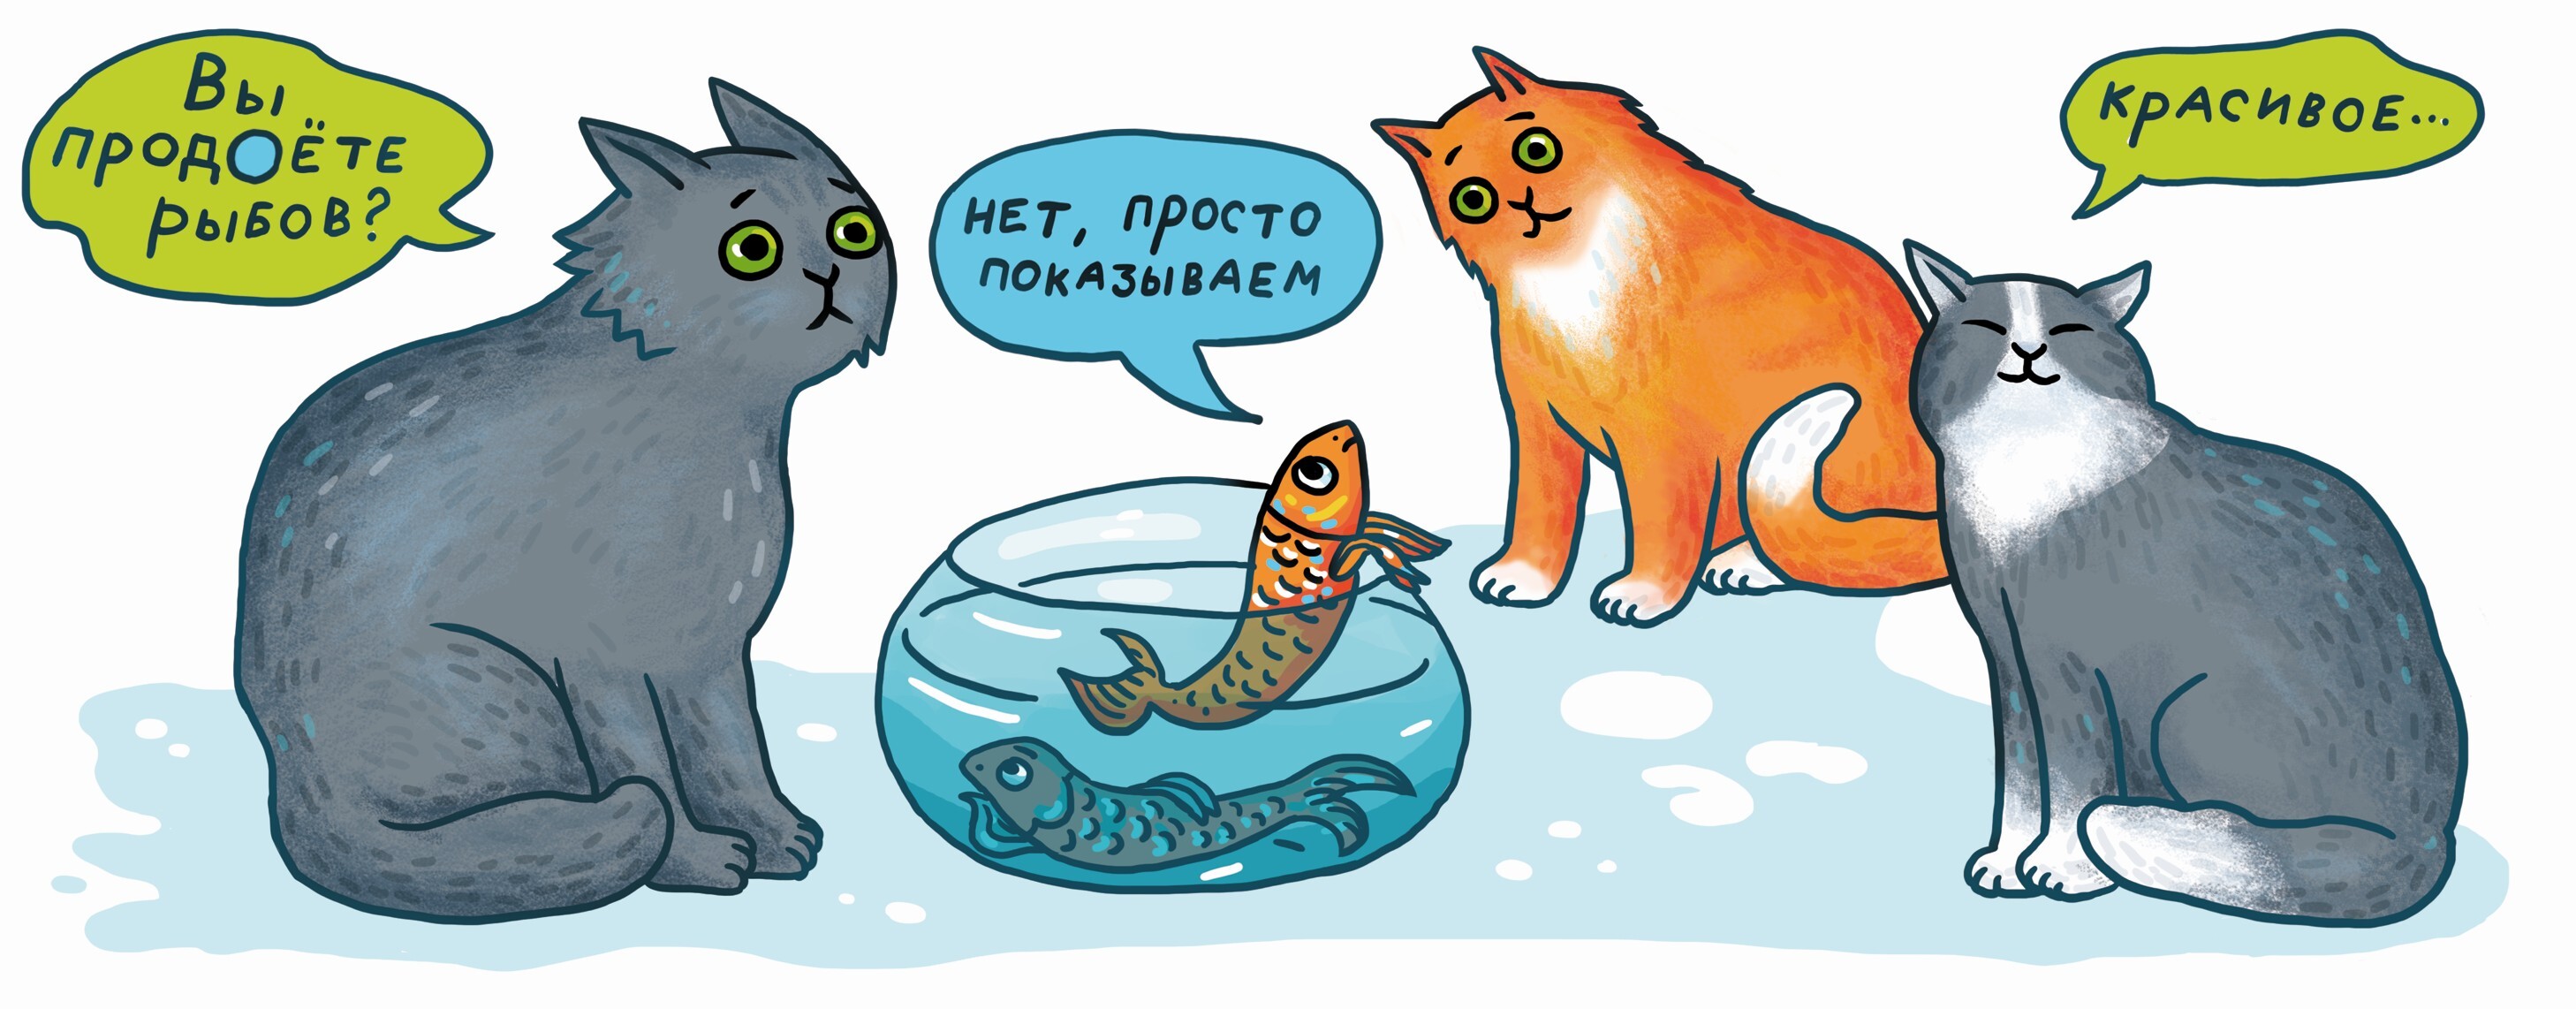 Продаете показываем красивое. Коты вы продаете Рыбов. Продоете Рыбов. Коты мемы про рыбу. Мем с котами и рыбой.